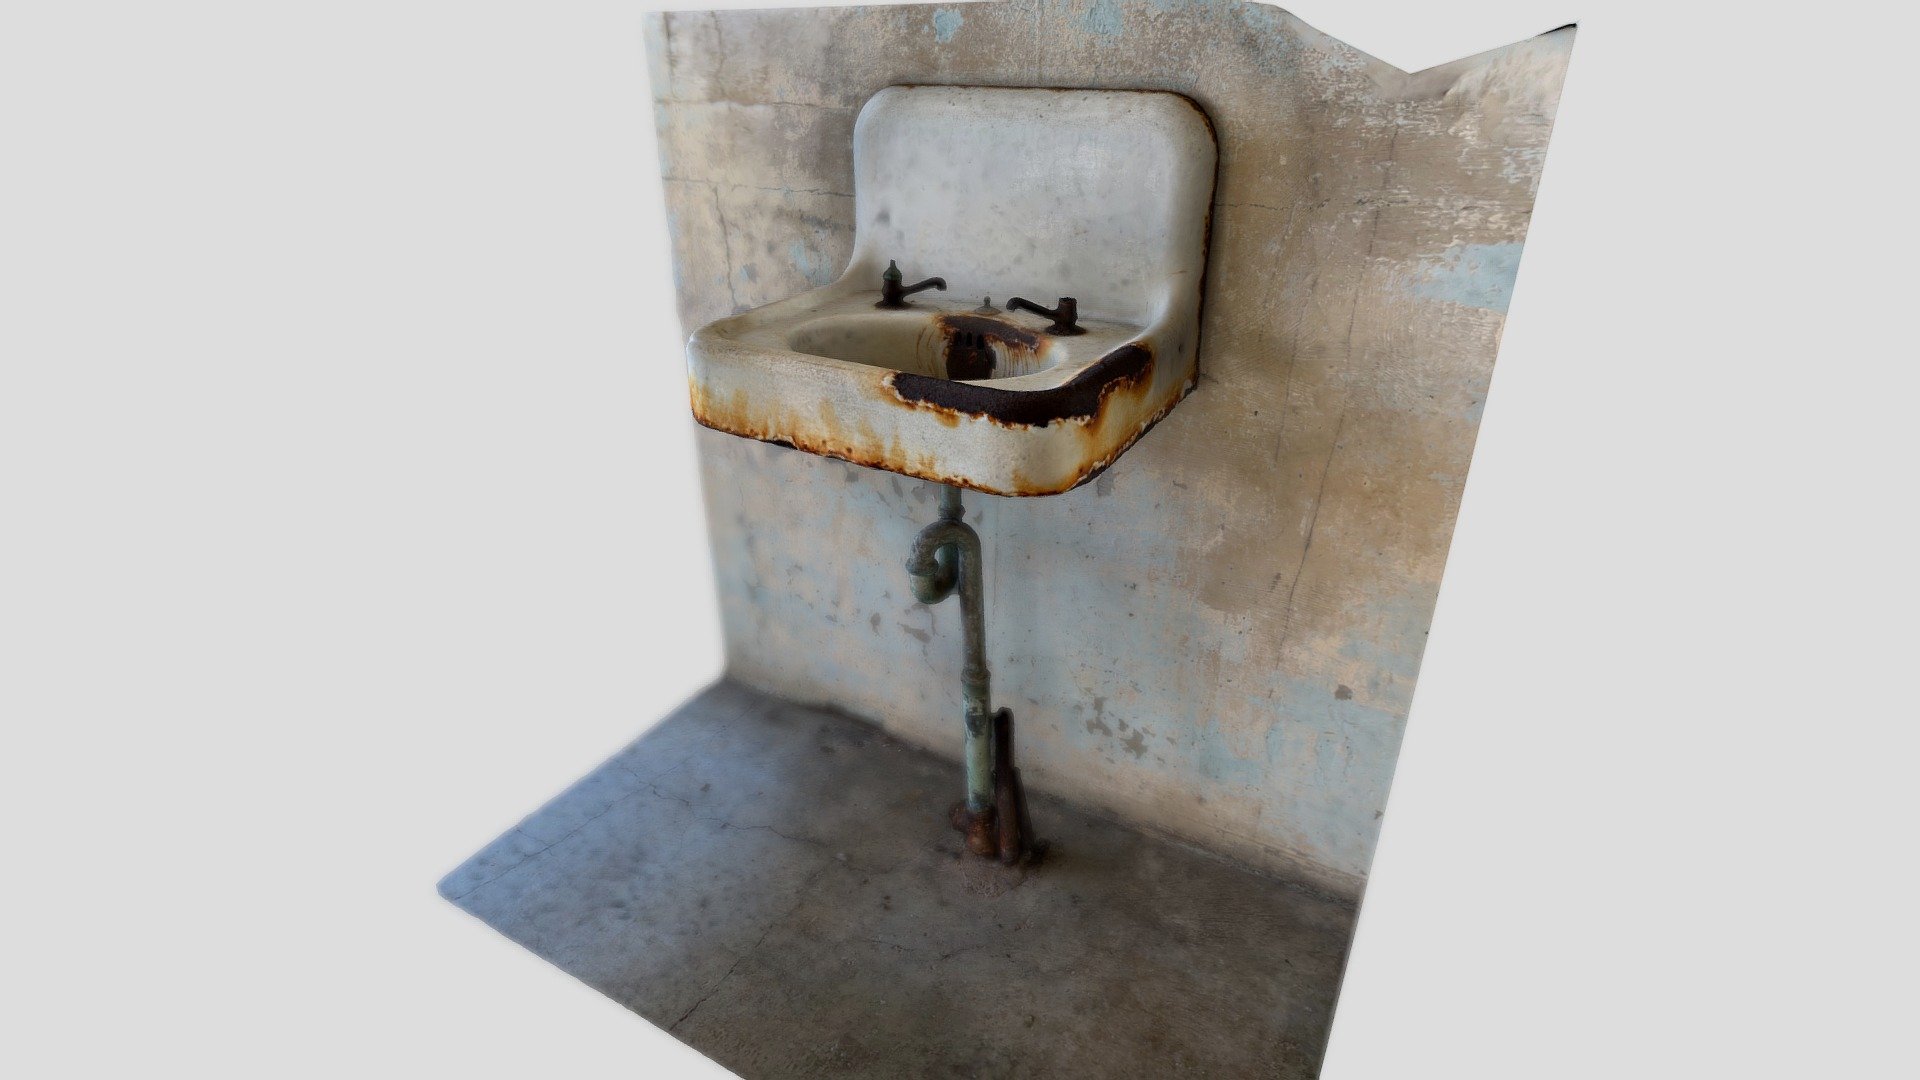 A sink inside Alcatraz - 86: Alcatraz sink - Buy Royalty Free 3D model by macdo219 3d model